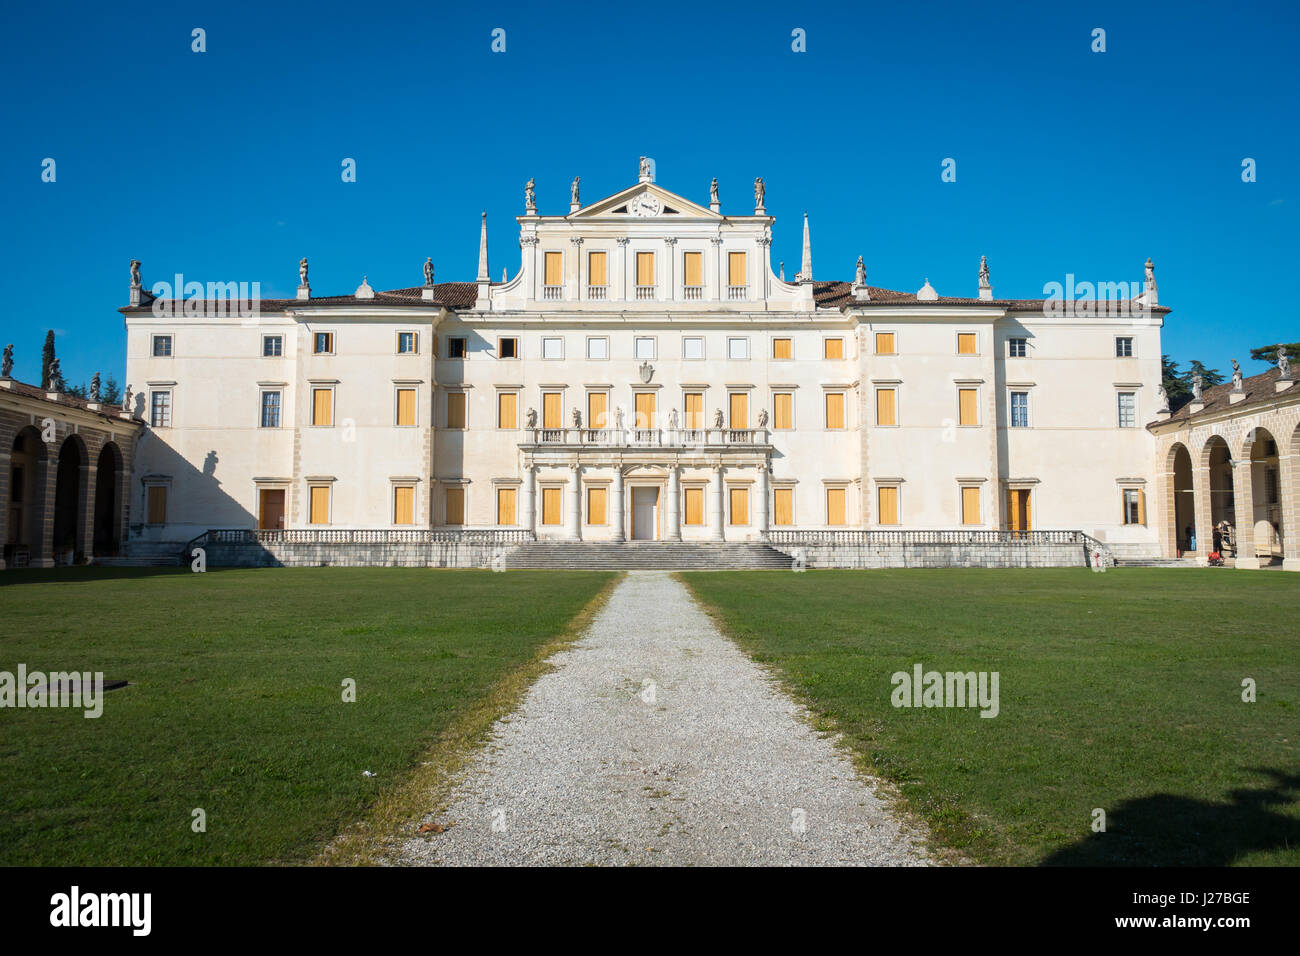 Facade of Villa Manin palace, near Udine, Friuli, Italy Stock Photo